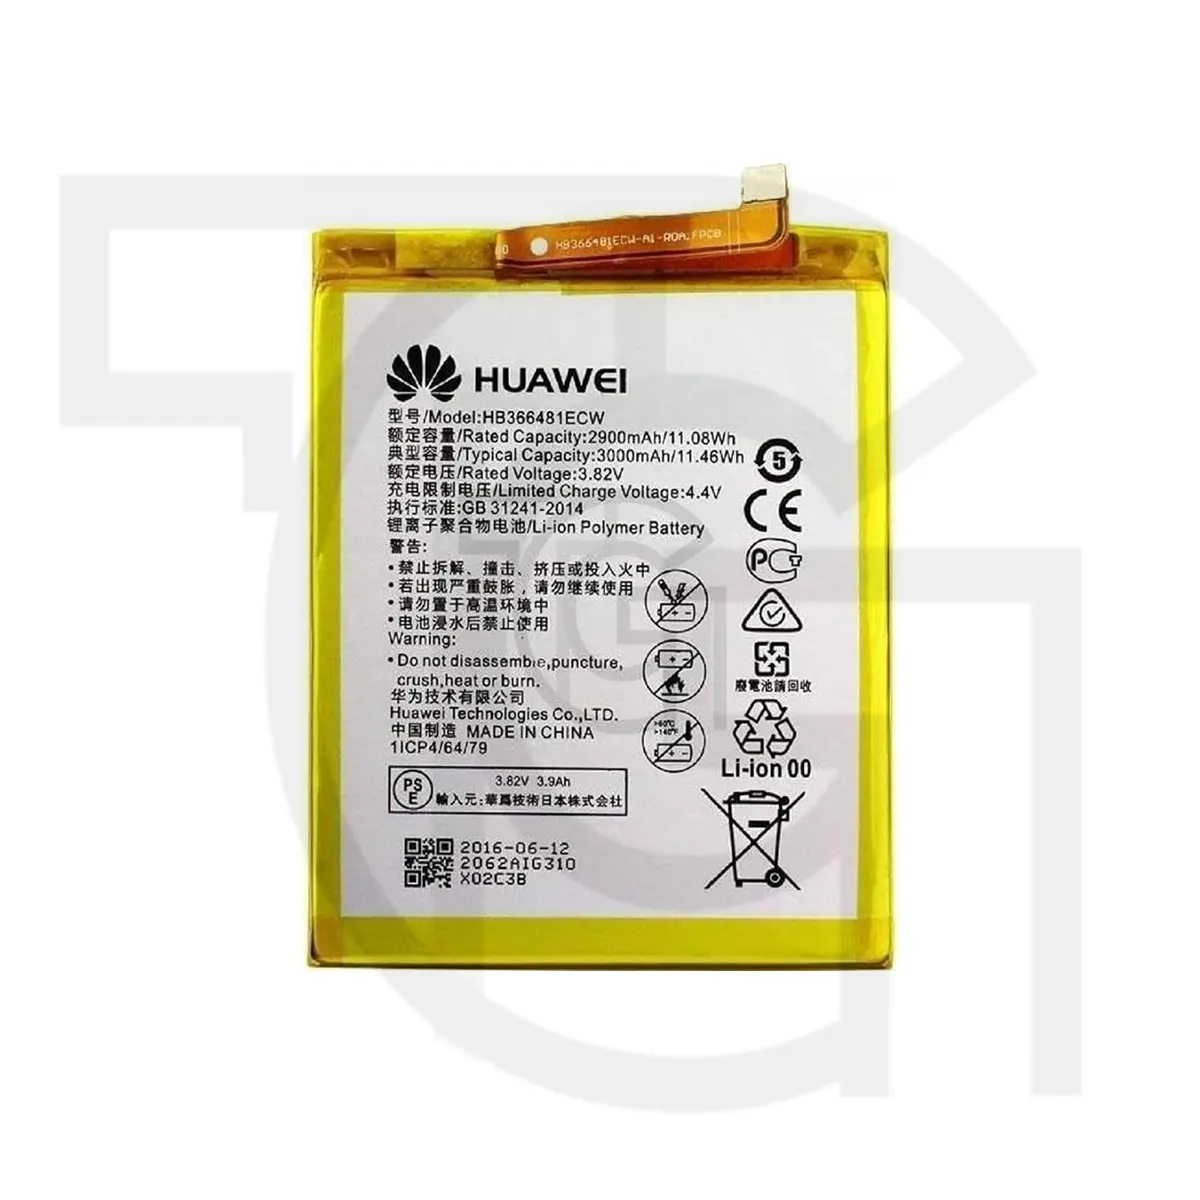 باتری هواوی (Huawei (HB366481ECW) - بهترین باتری کیفیت هواوی با عمر باتری طولانی و عملکرد بی نقص. سفارش دهید و تجربه بیشتری از موبایل خود داشته باشید.